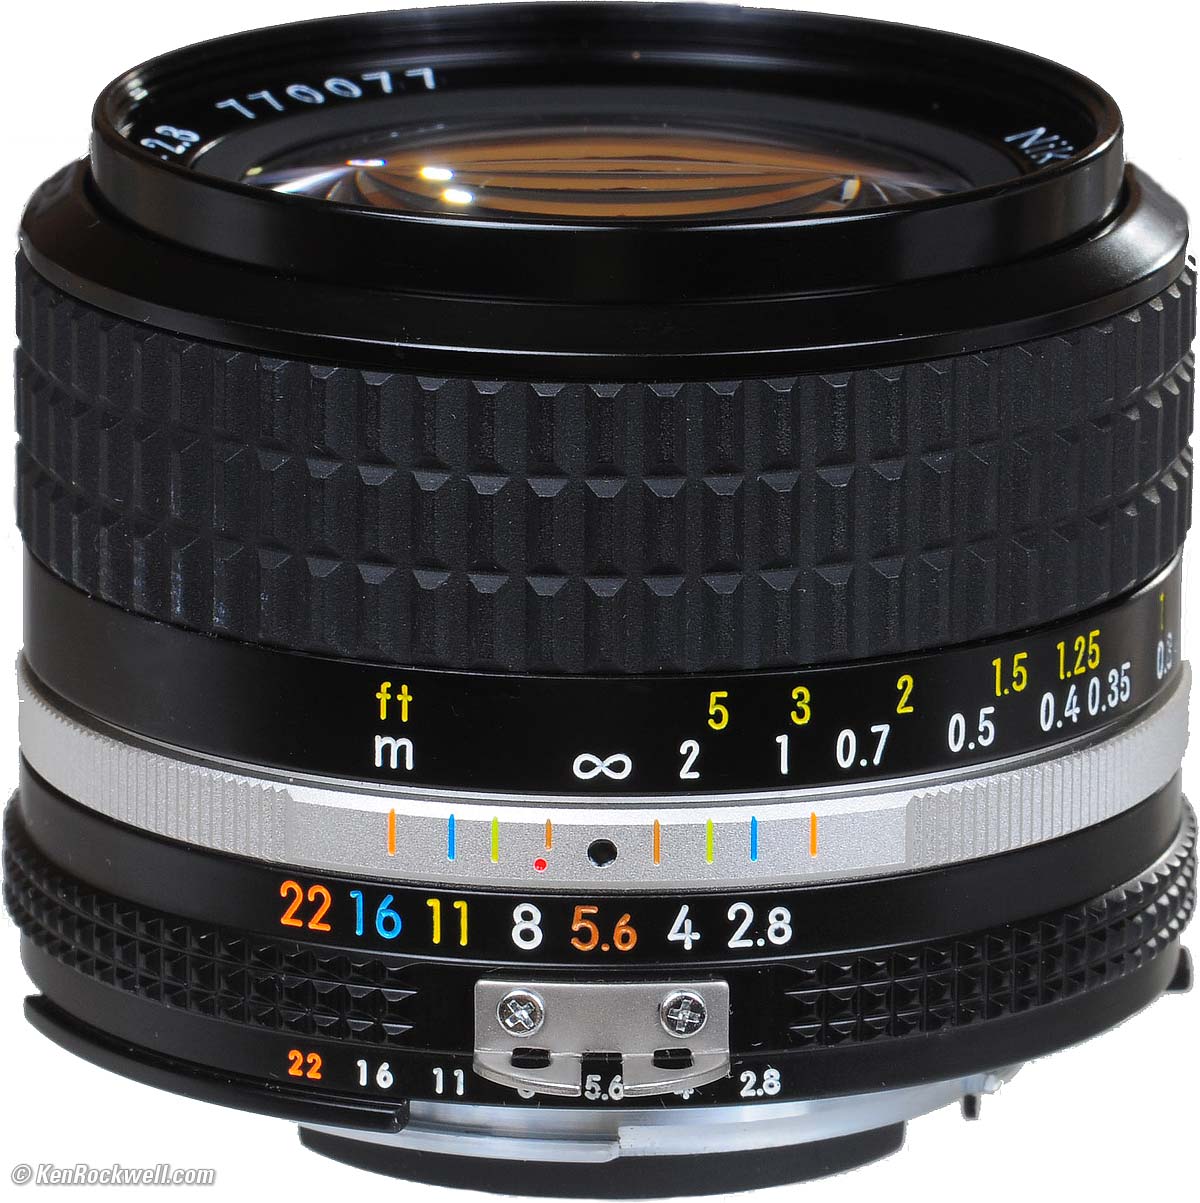 【動作好調】 Nikon ニコン AI-S 24mm F2.8 レンズ カメラ